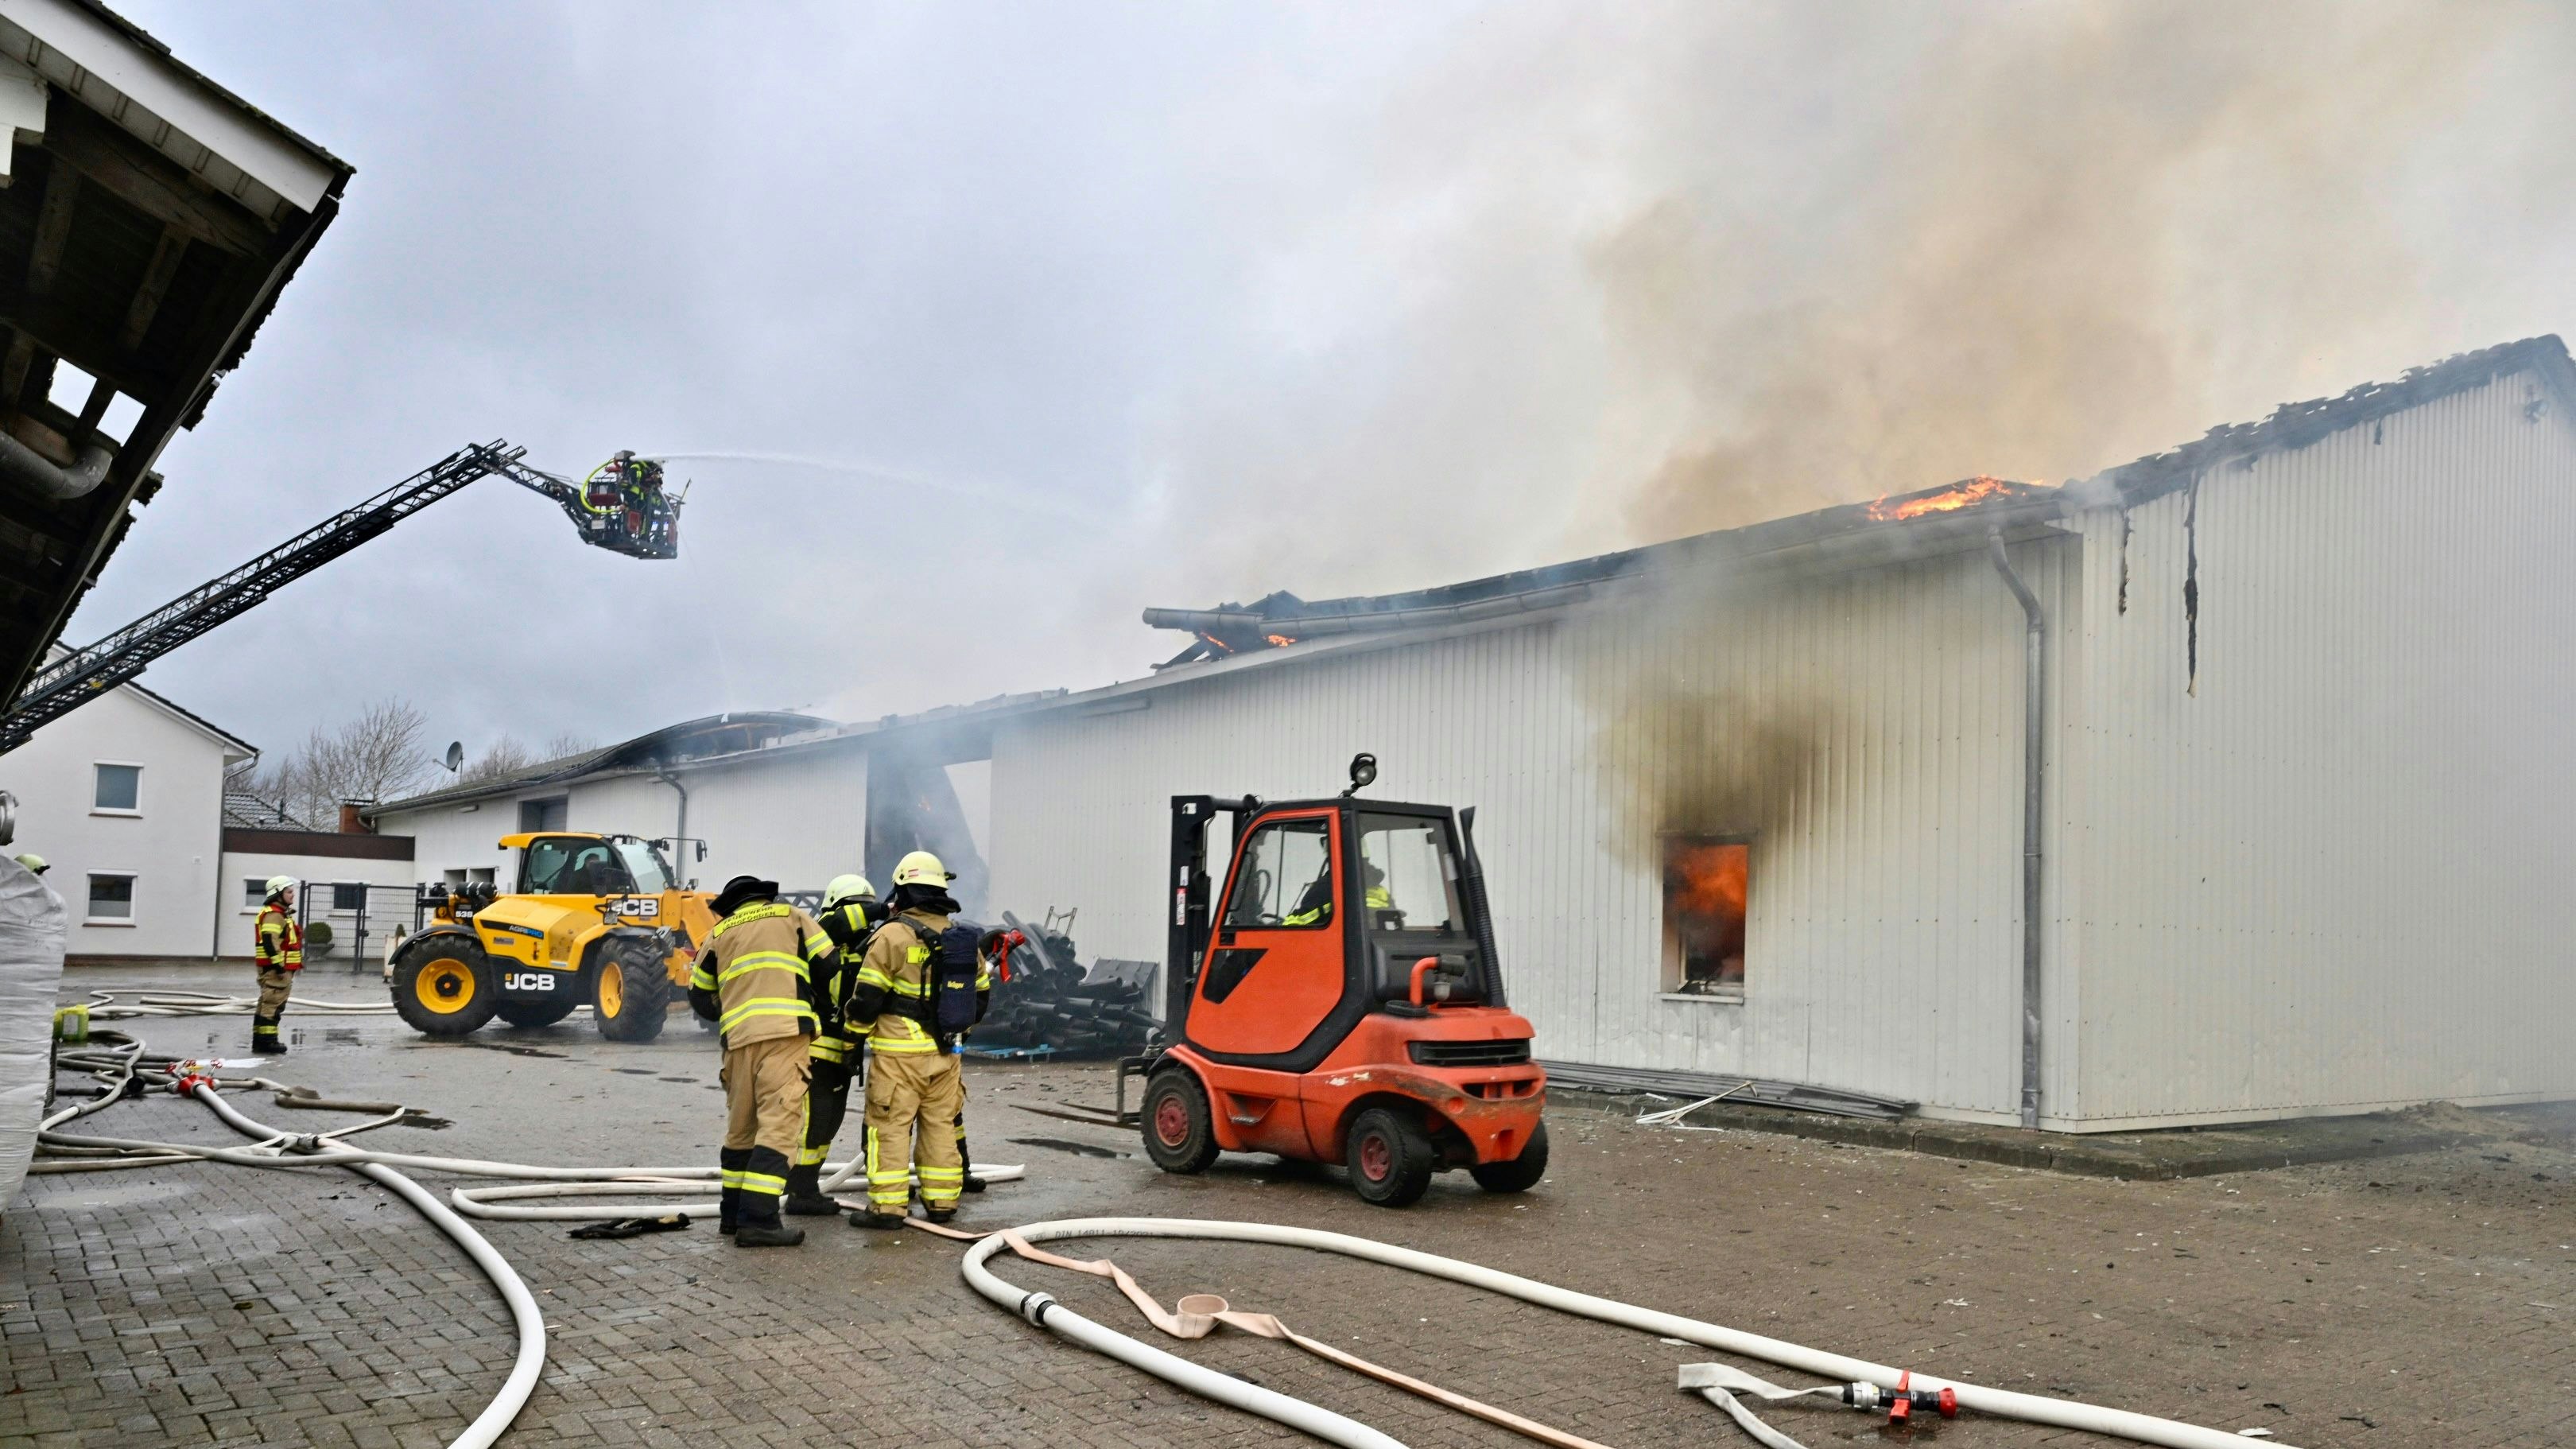 Über 300 Feuerwehrleute bekämpfen den Brand in Holtrup. Foto: M. Niehues